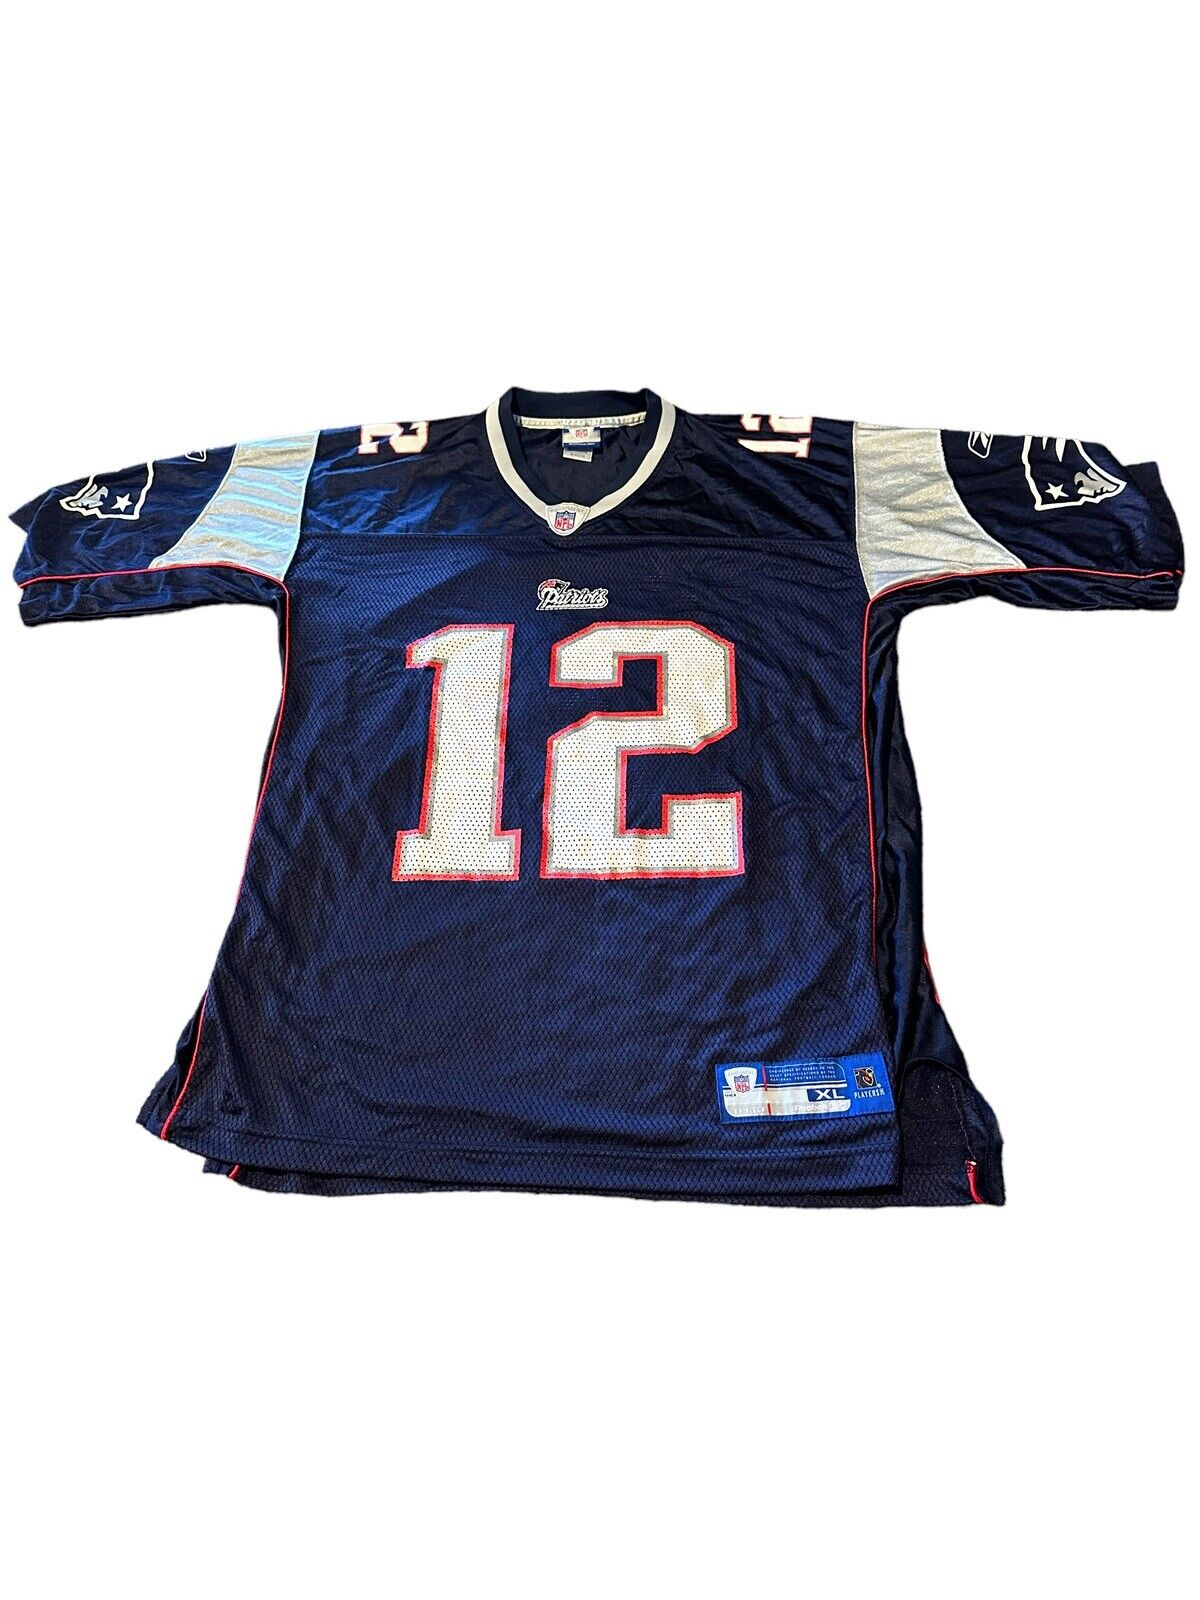 Tom Brady New England Patriots Nike Jersey Size XL Reebok NFL